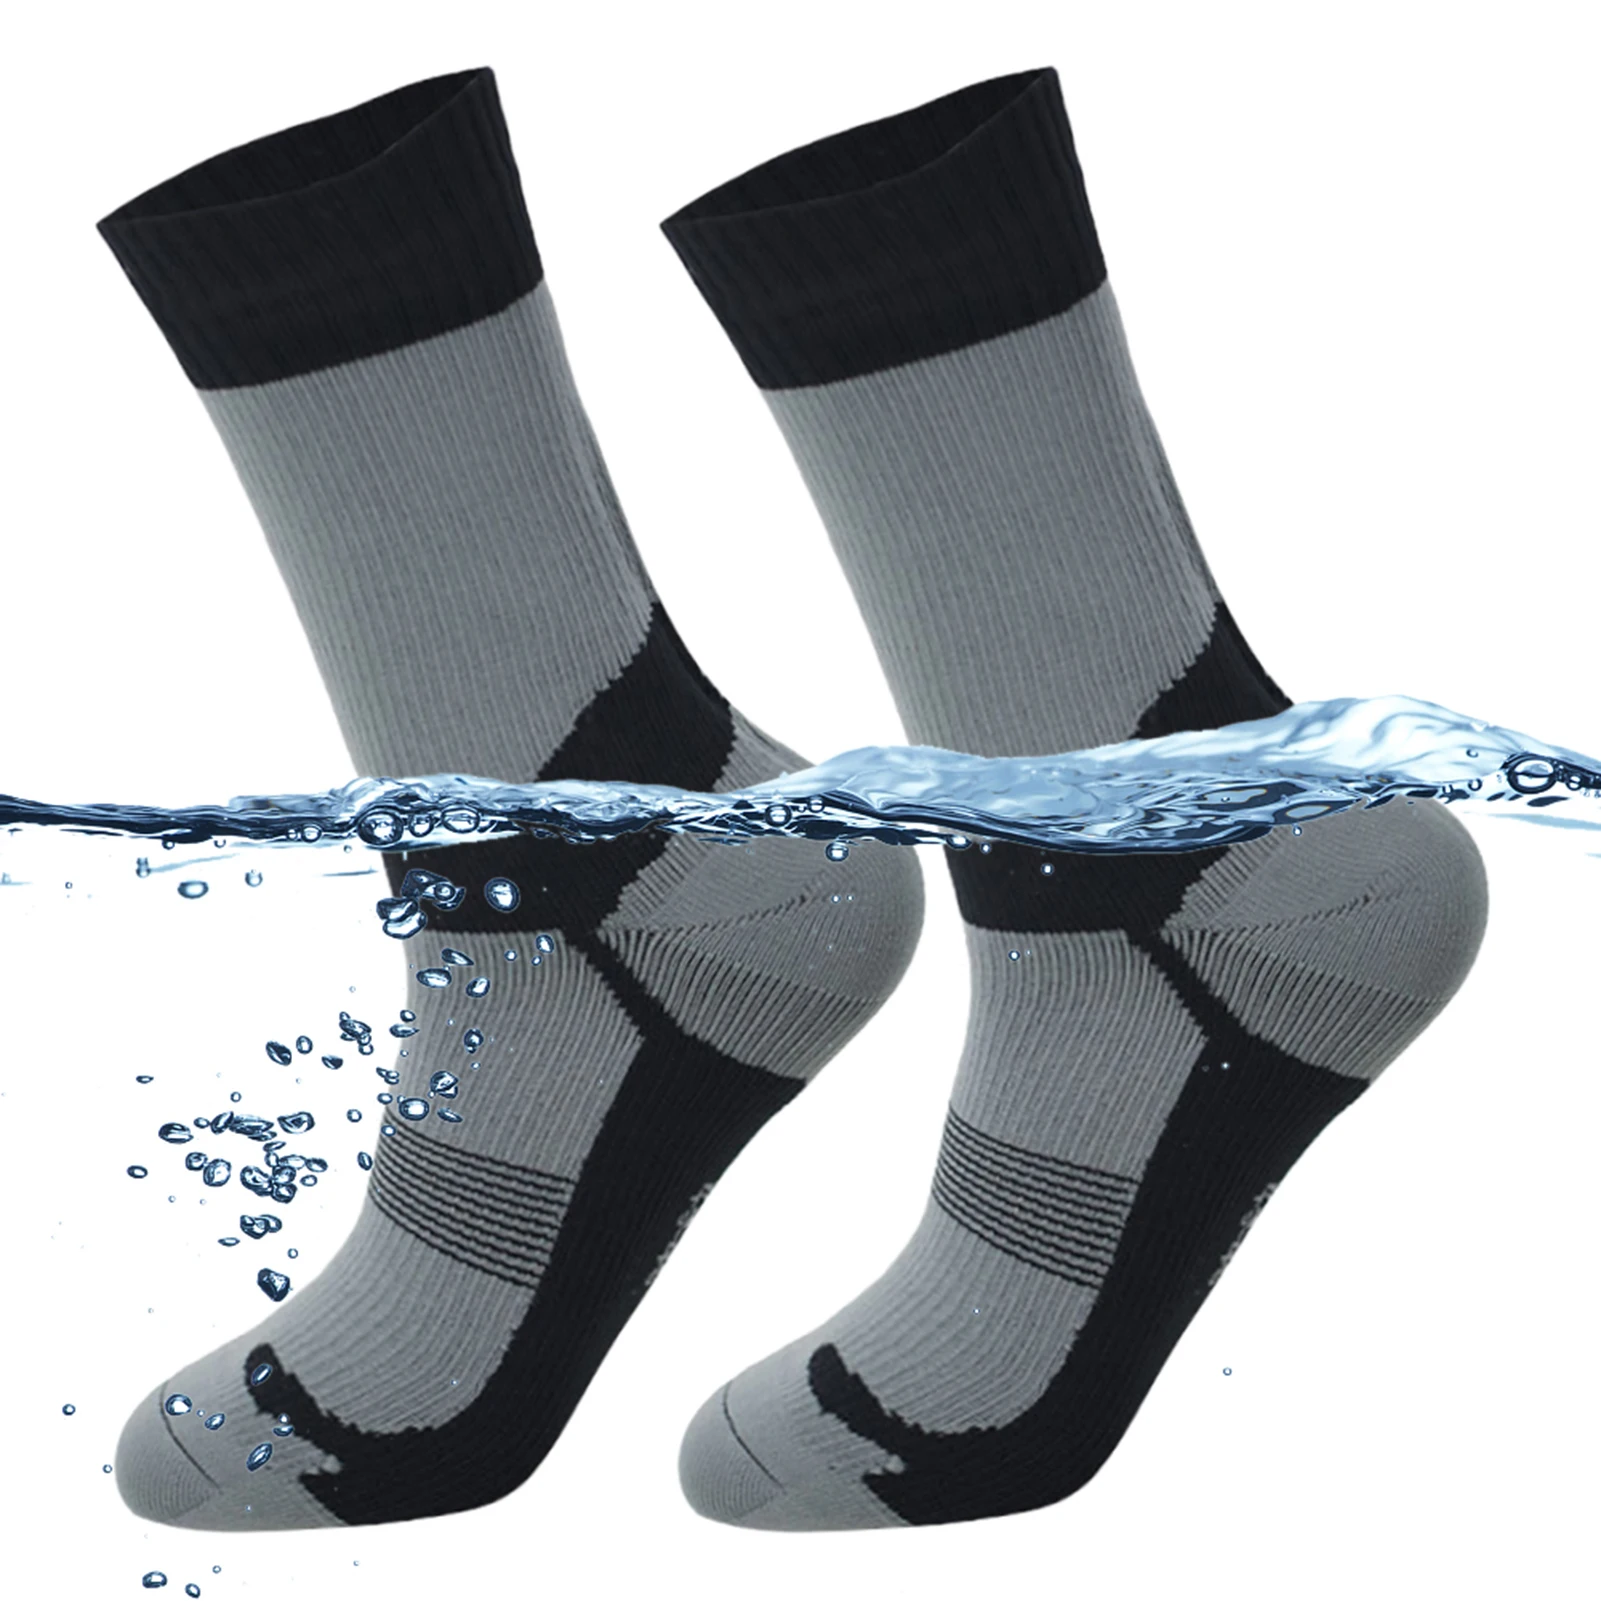 

Водонепроницаемые носки для активного отдыха для взрослых, дышащие теплые и водонепроницаемые носки для катания на лыжах, водных видов спорта, походов, велоспорта